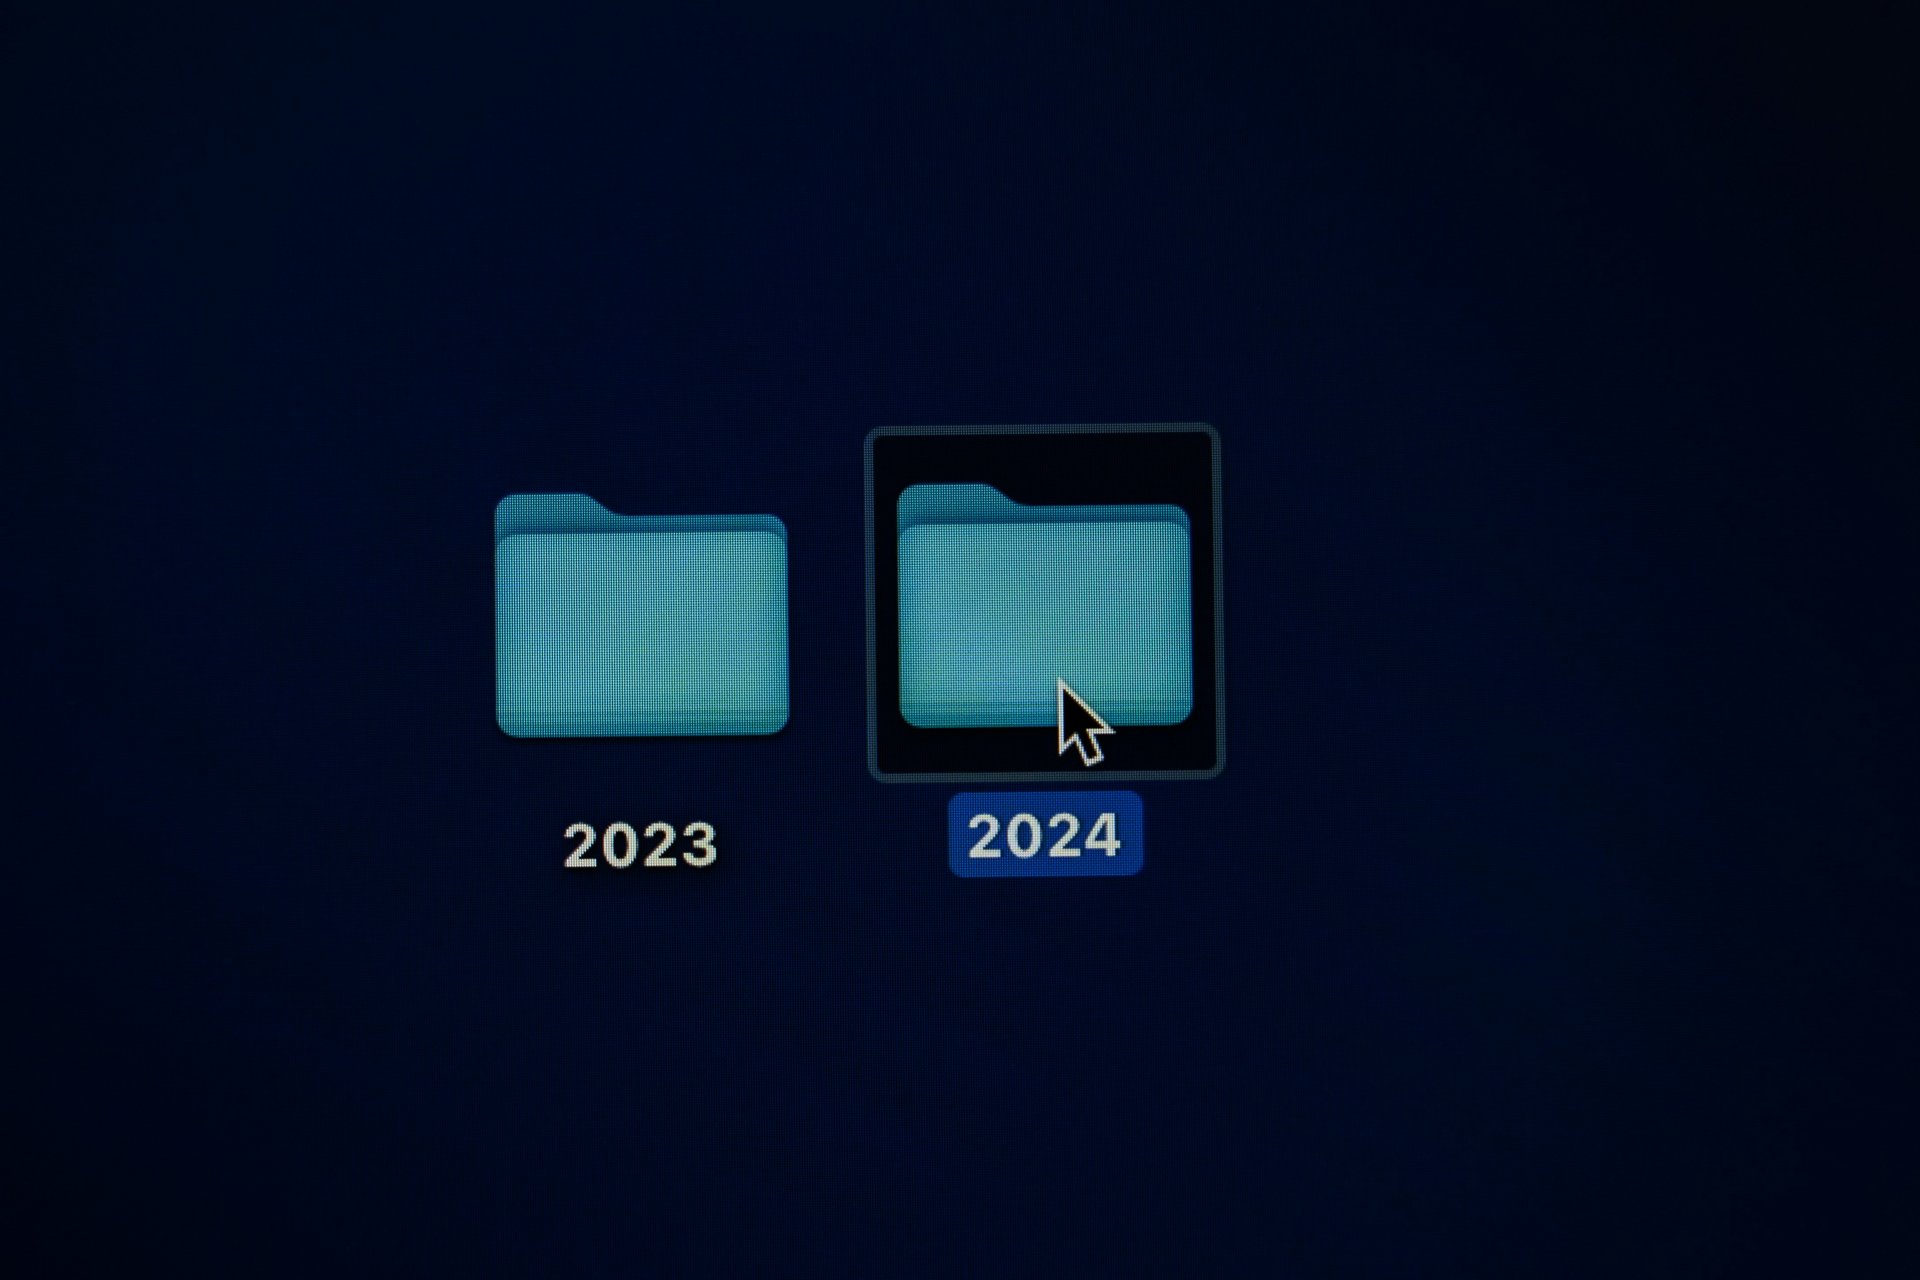 2024 folder, computer